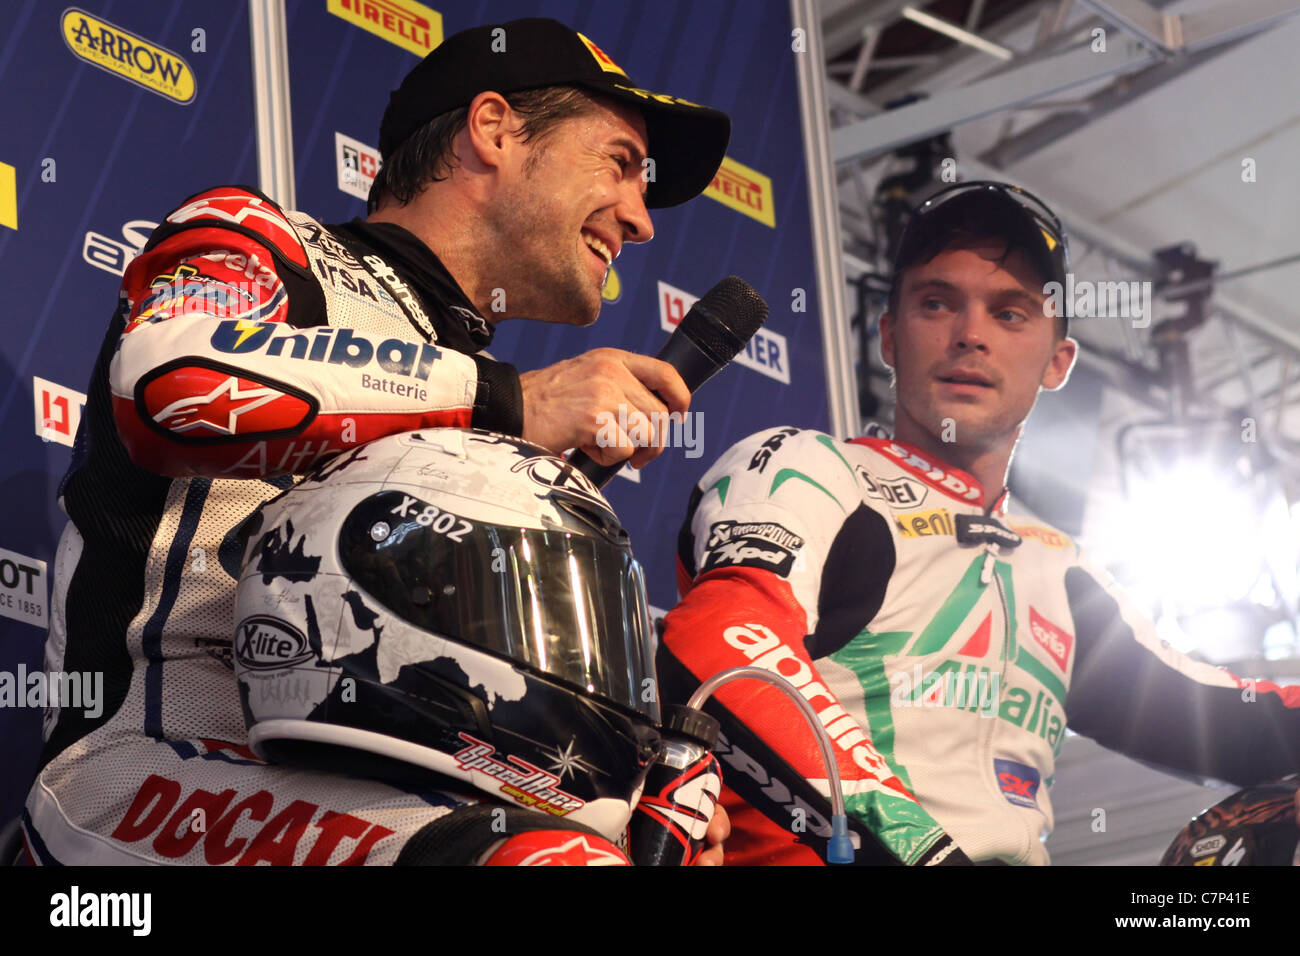 IMOLA - IT - SBK World Championship - Carlos Checa (Ducati) & Leon camier (Aprilia) Stock Photo